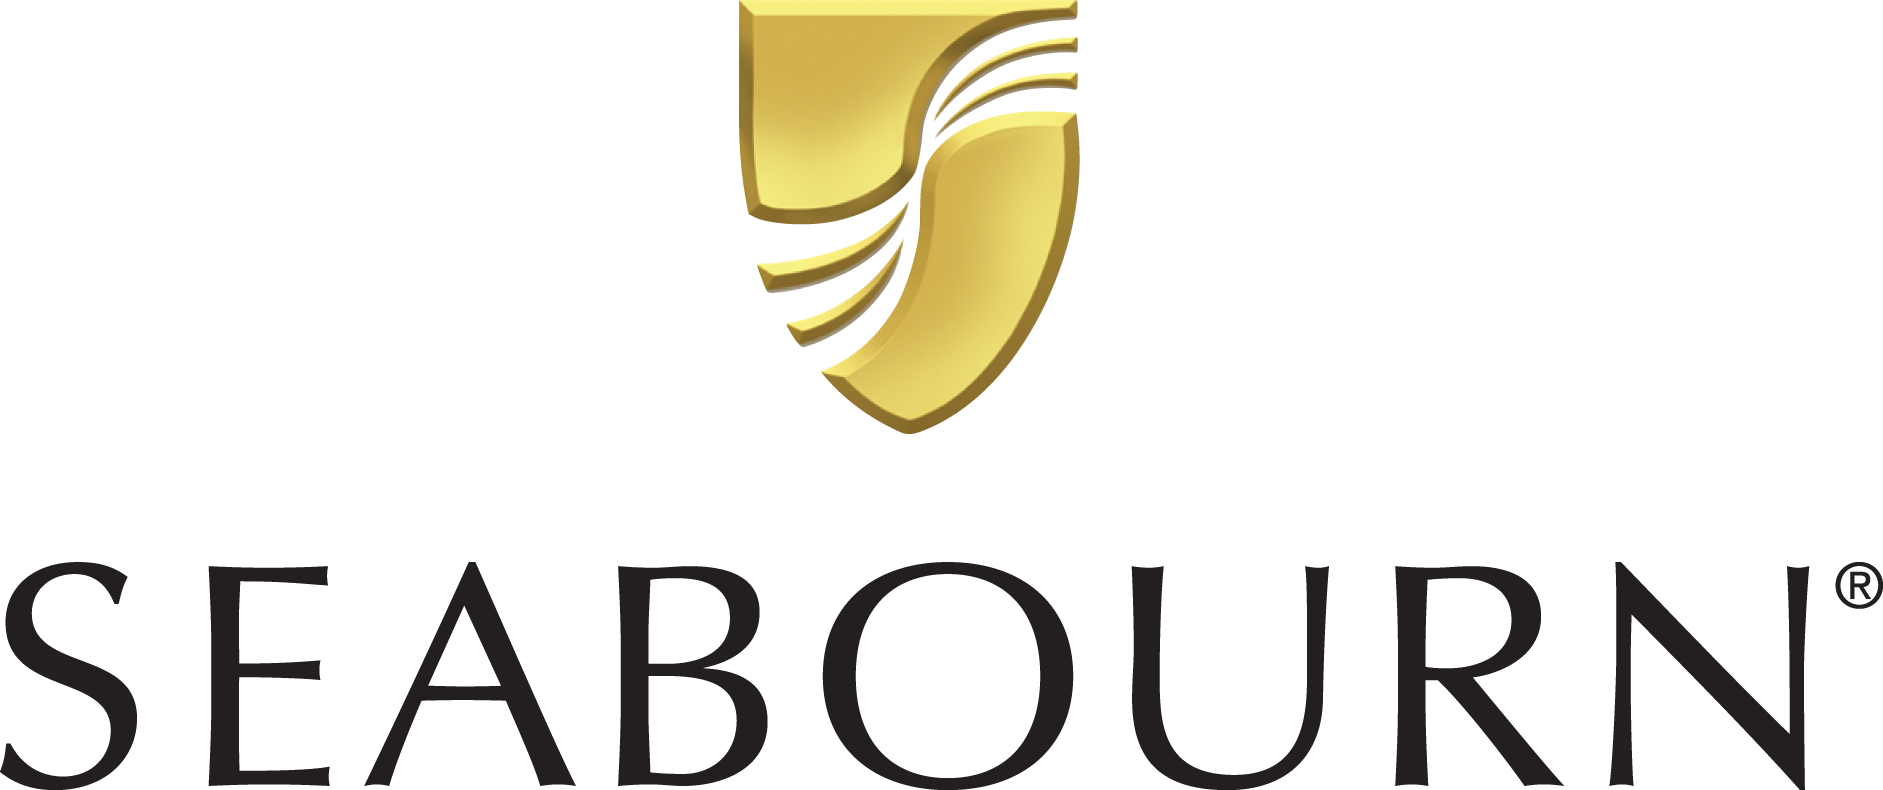 Seabourn Quest Reederei Logo